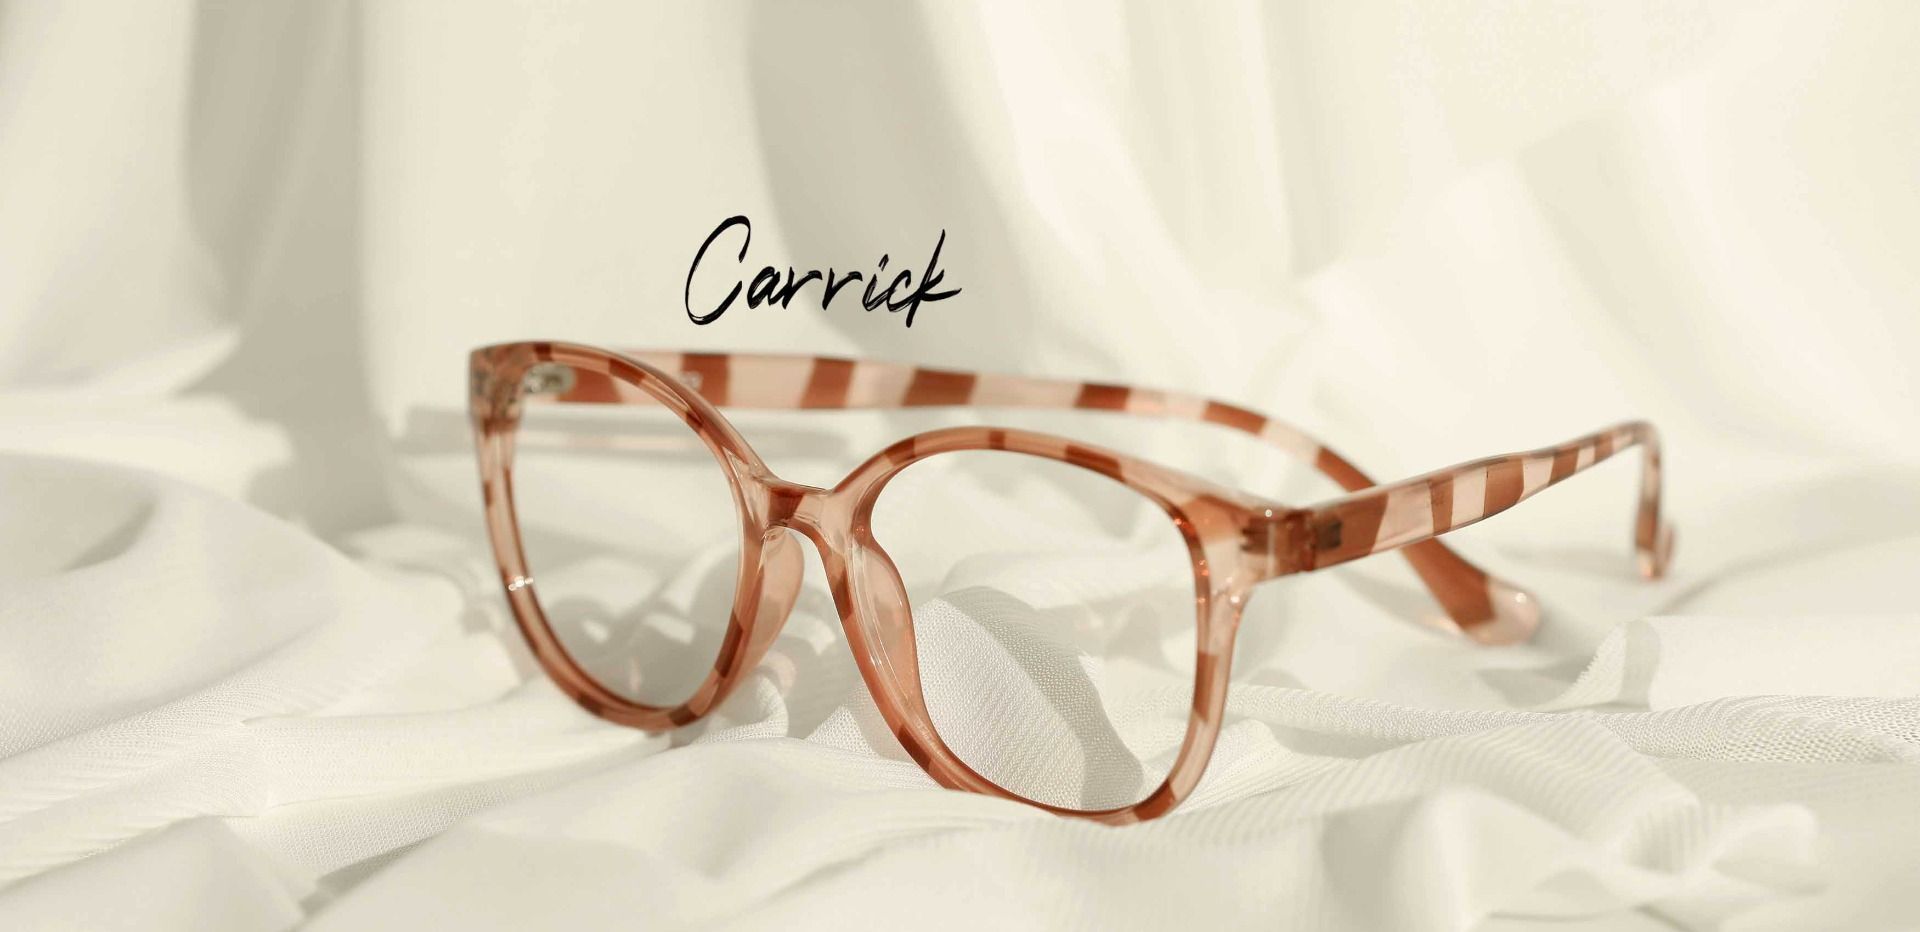 Carrick Square Prescription Glasses - Two